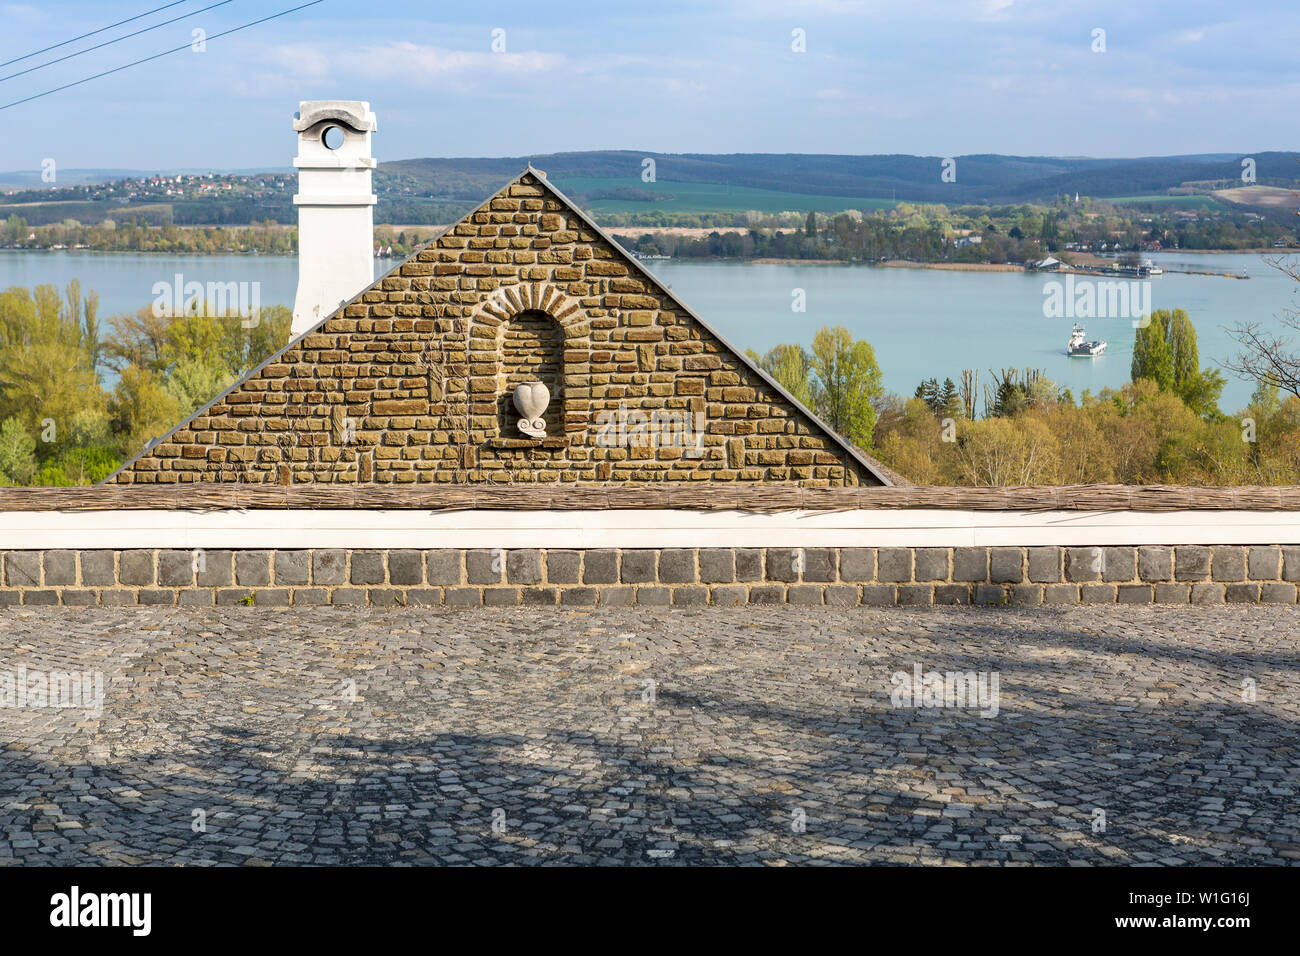 Dettagli architettonici con la bellissima campagna ungherese vedute sul lago Balaton, Ungheria Foto Stock